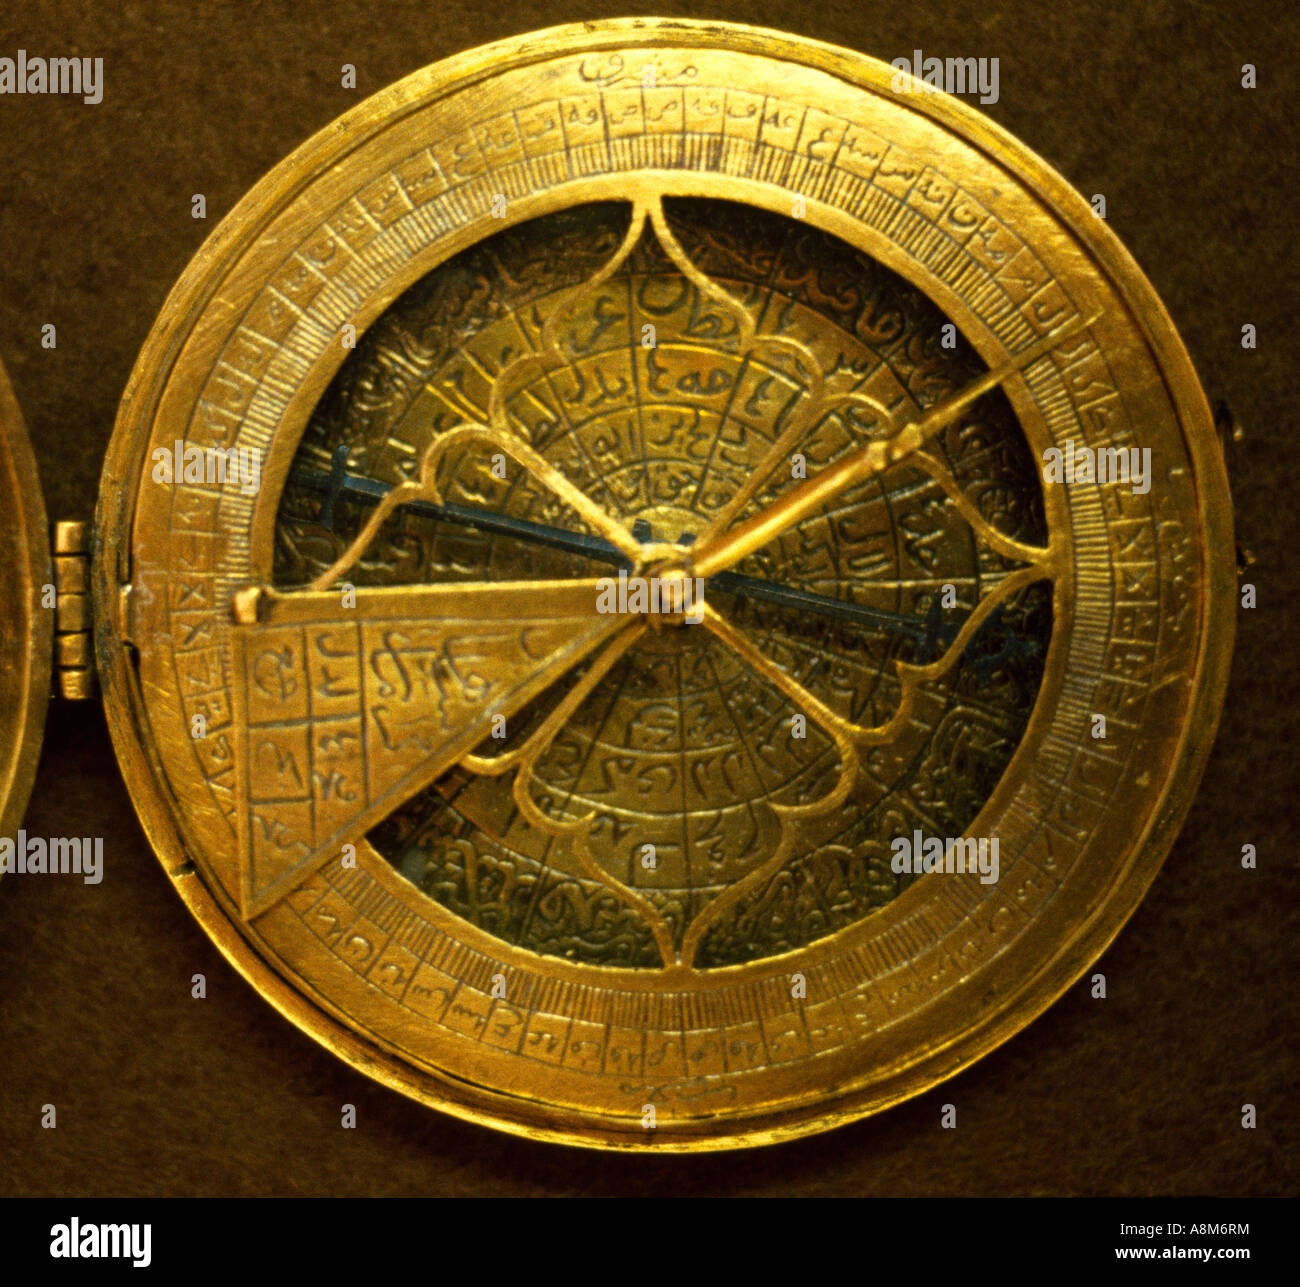 Astrolabio instrumento científico islámico temprano Foto de stock